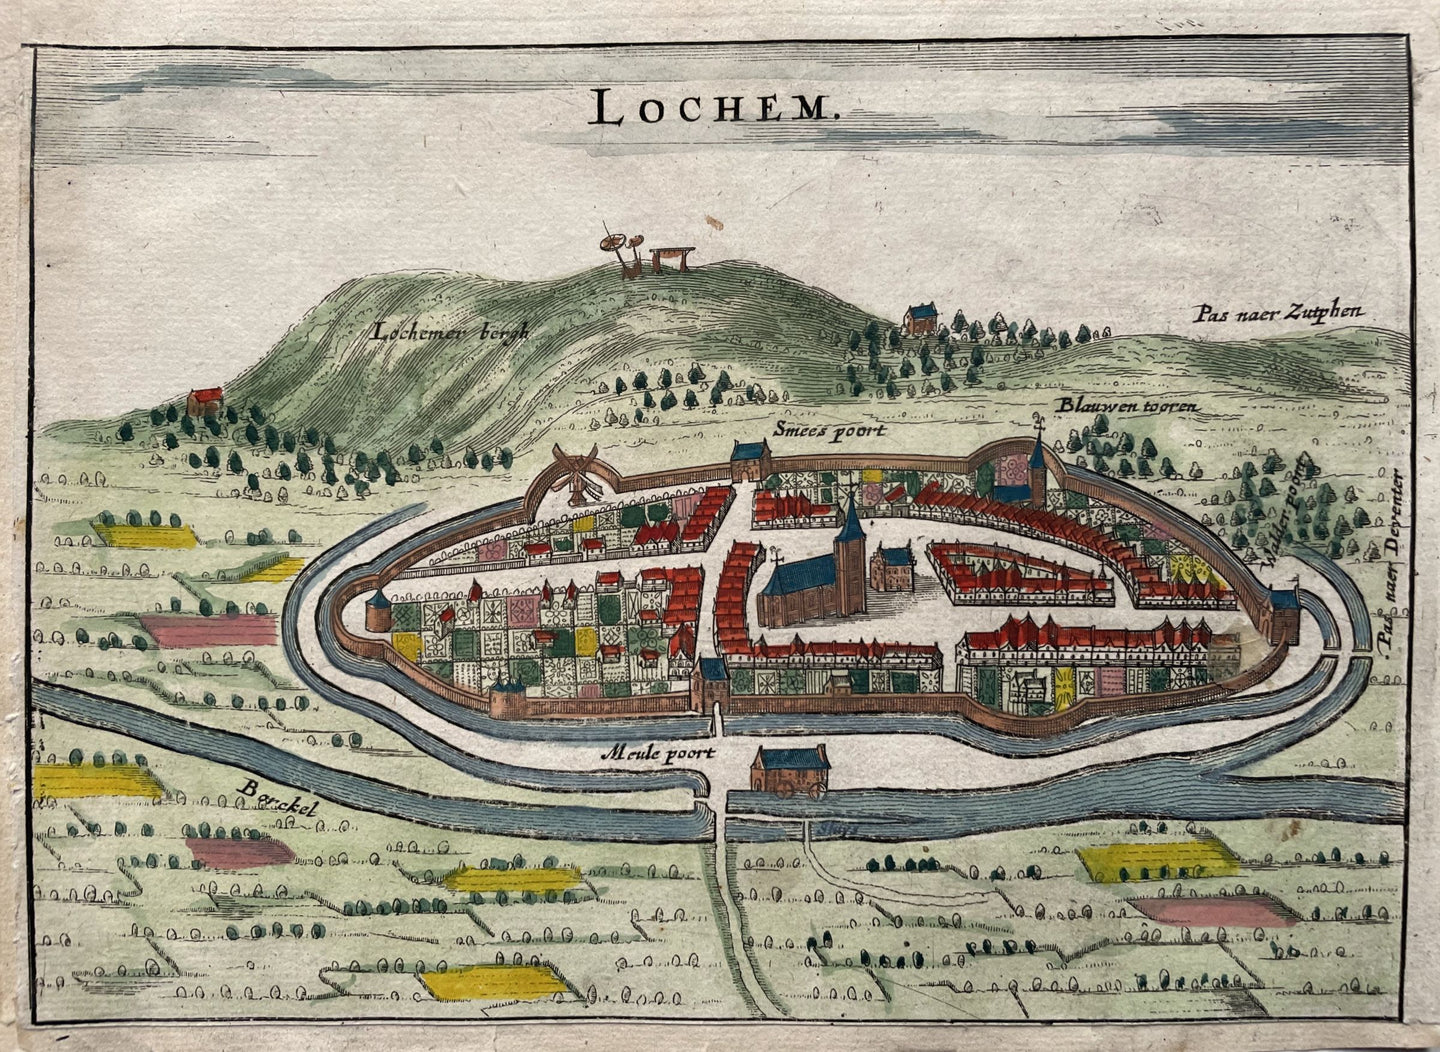 Lochem - N Geelkercken / J van Biesen - 1654